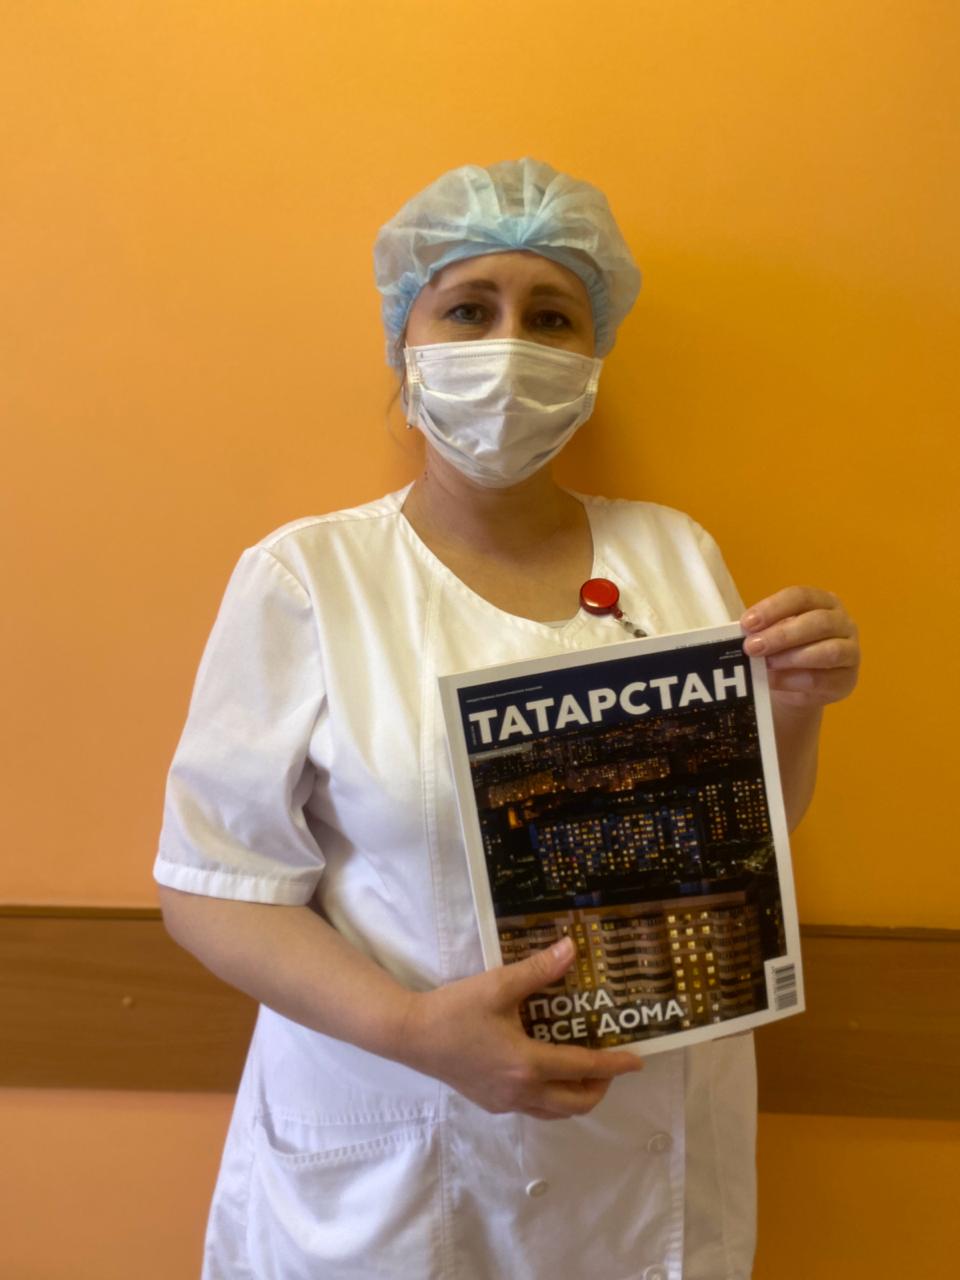 Спасибо врачам! - от татарстанцев и журнала "Татарстан"